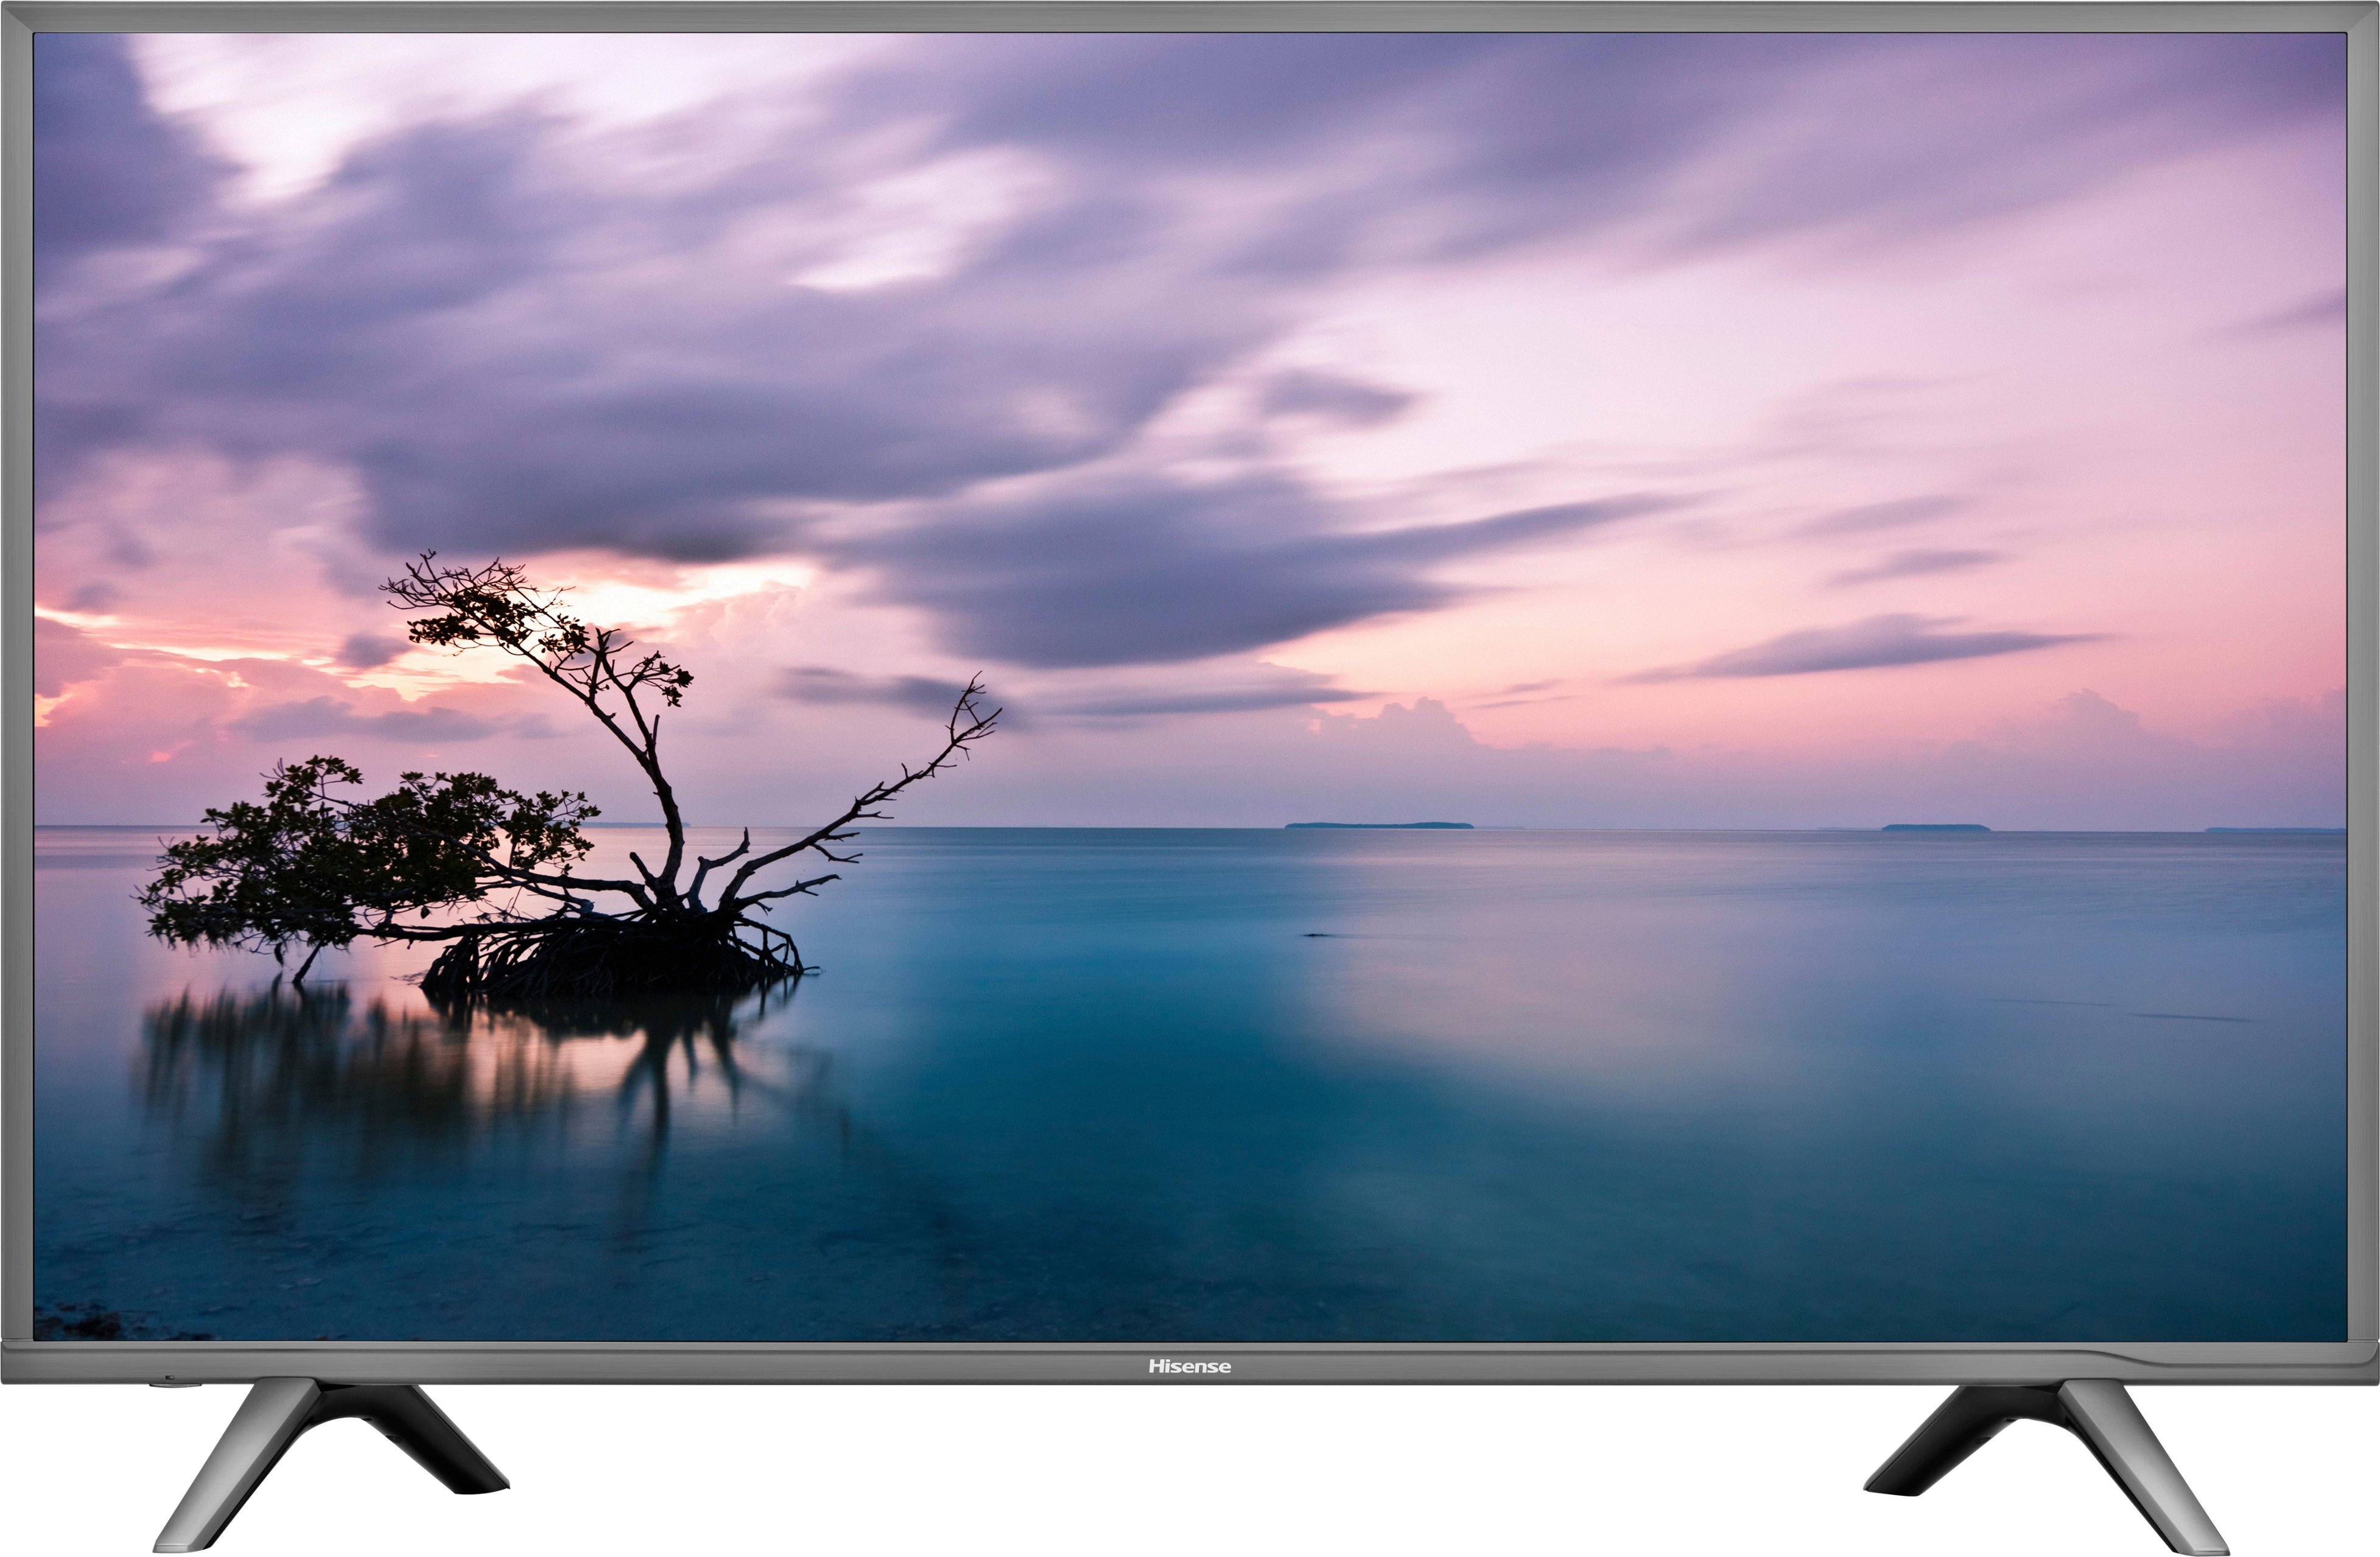 Las mejores ofertas en Frecuencia de actualización de 60 Hz LED TV